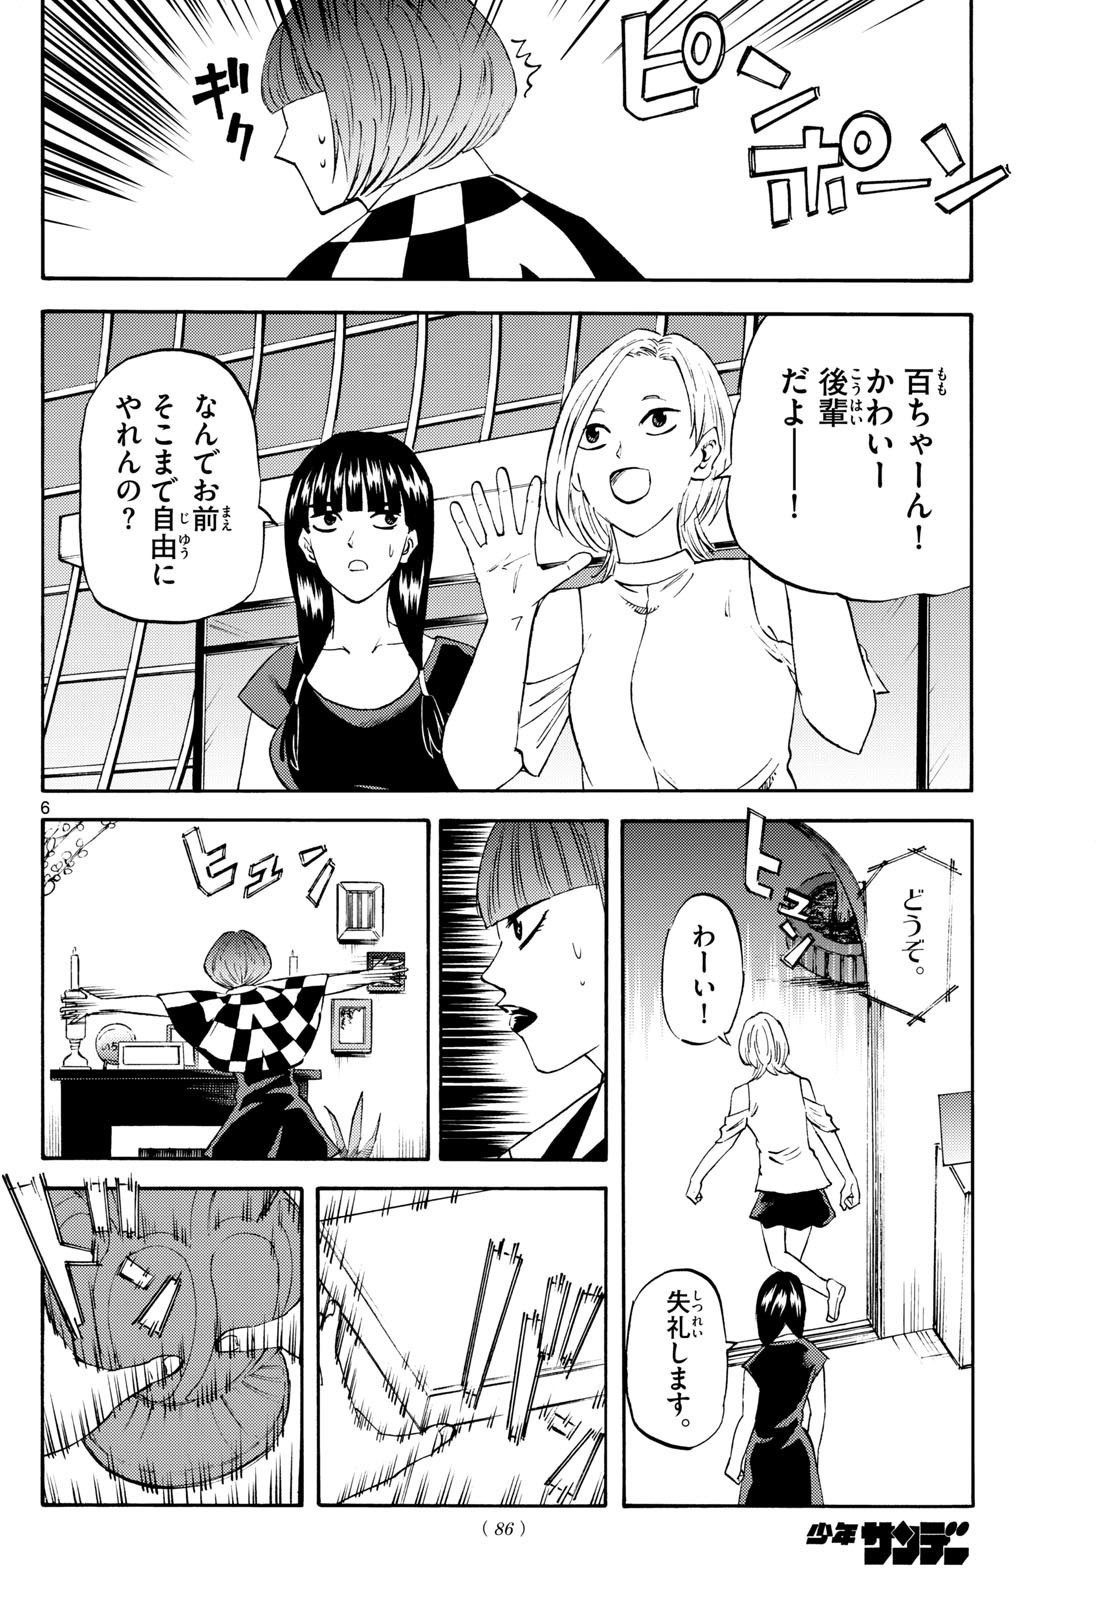 Ryu-to-Ichigo - Chapter 199 - Page 6